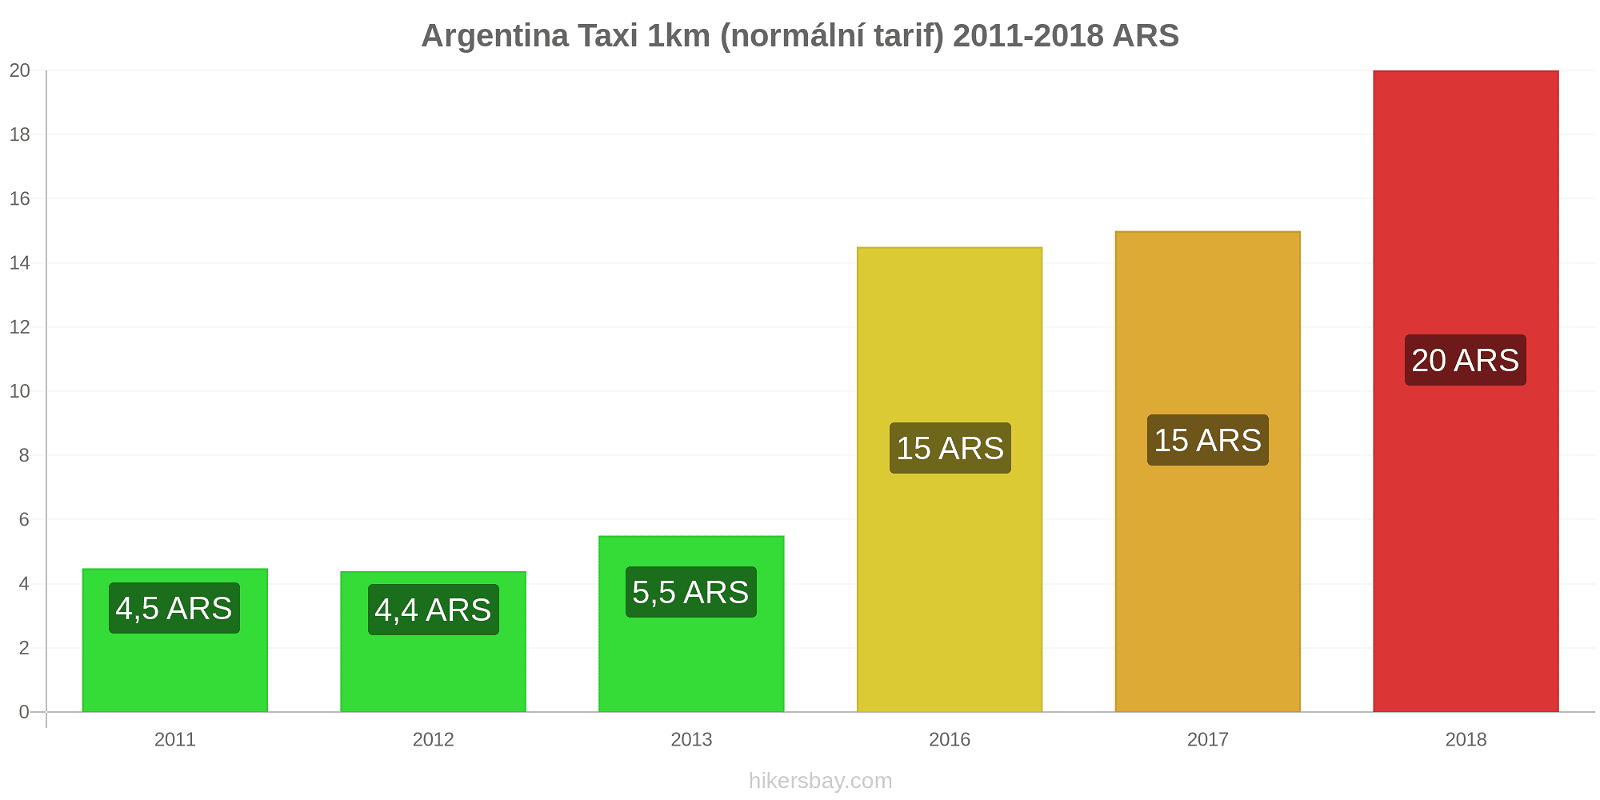 Argentina změny cen Taxi 1km (normální tarif) hikersbay.com